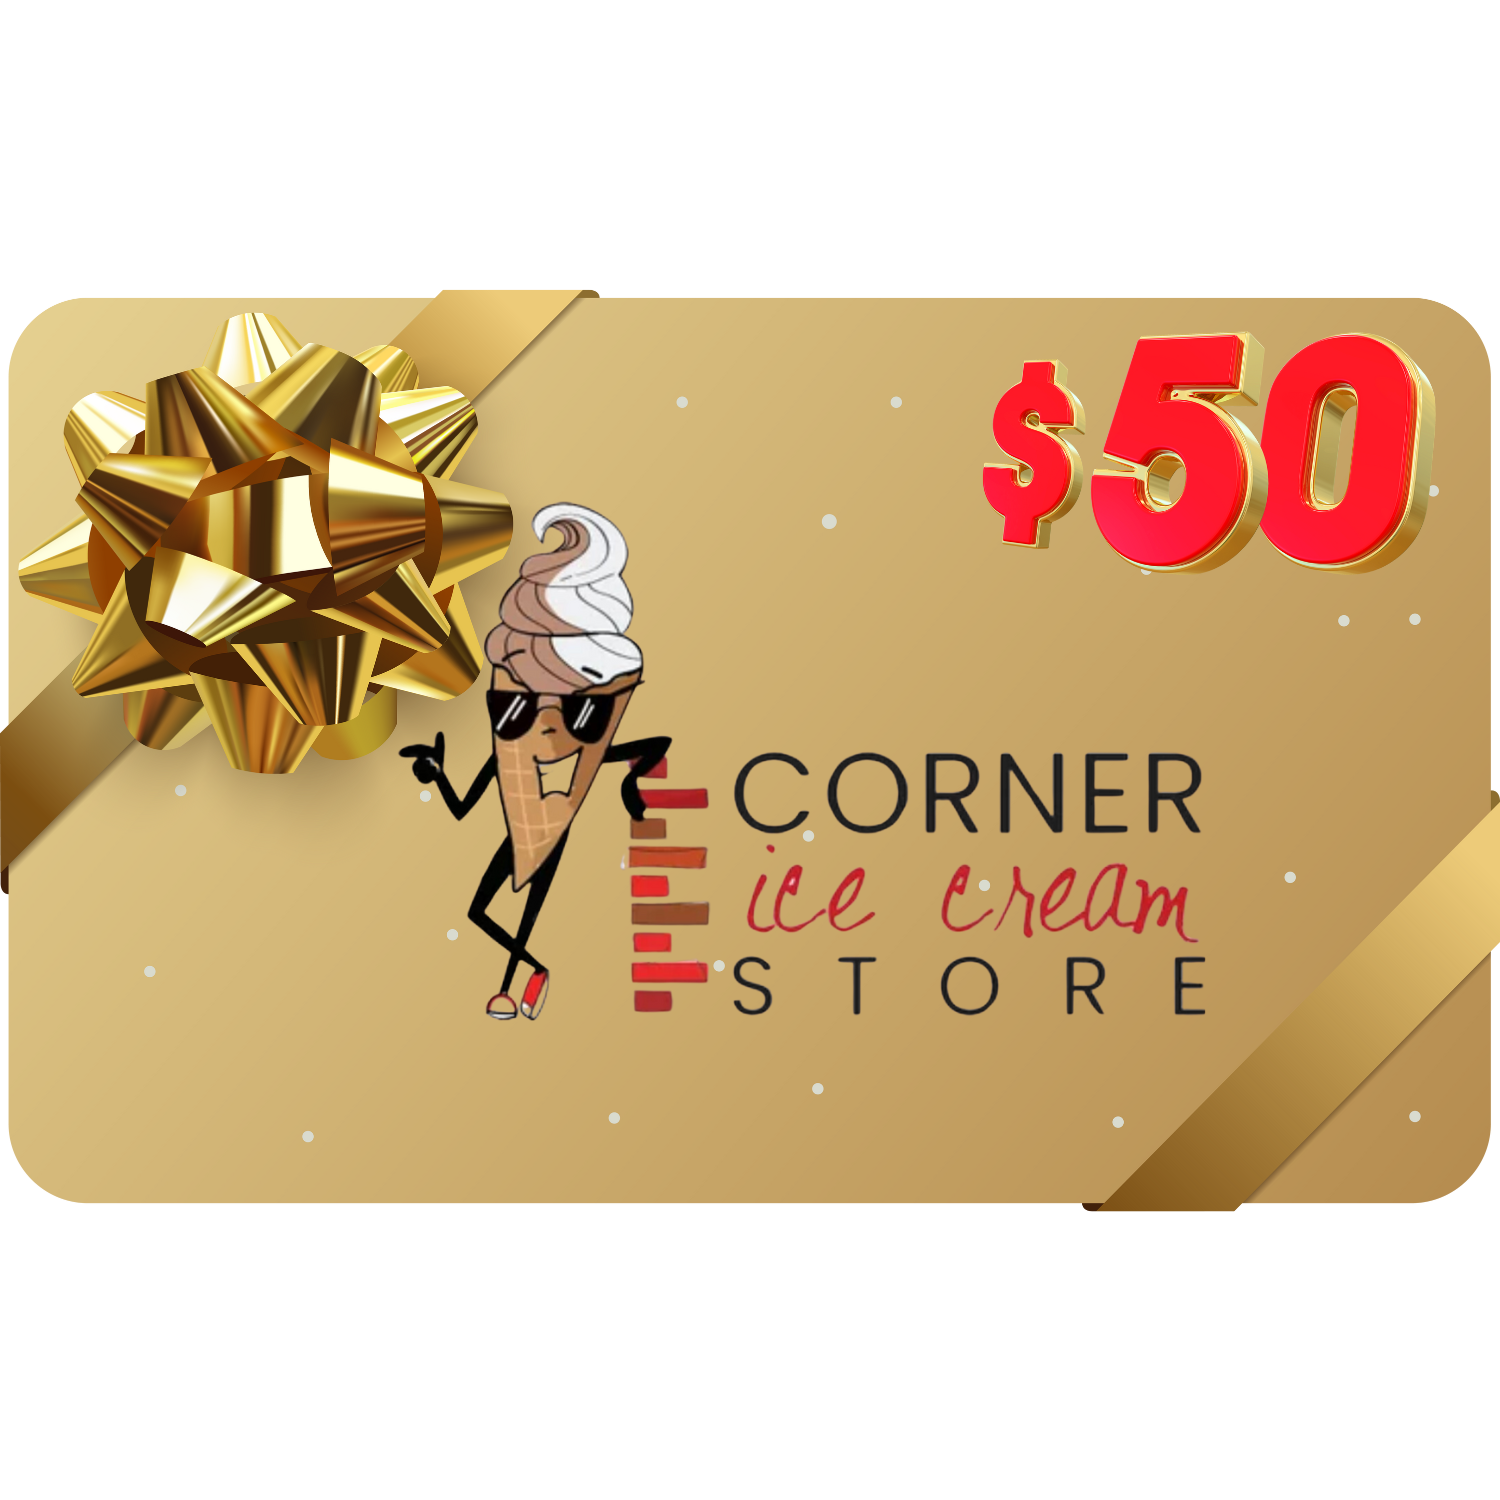 Corner Ice Cream Store - Gift Certificate